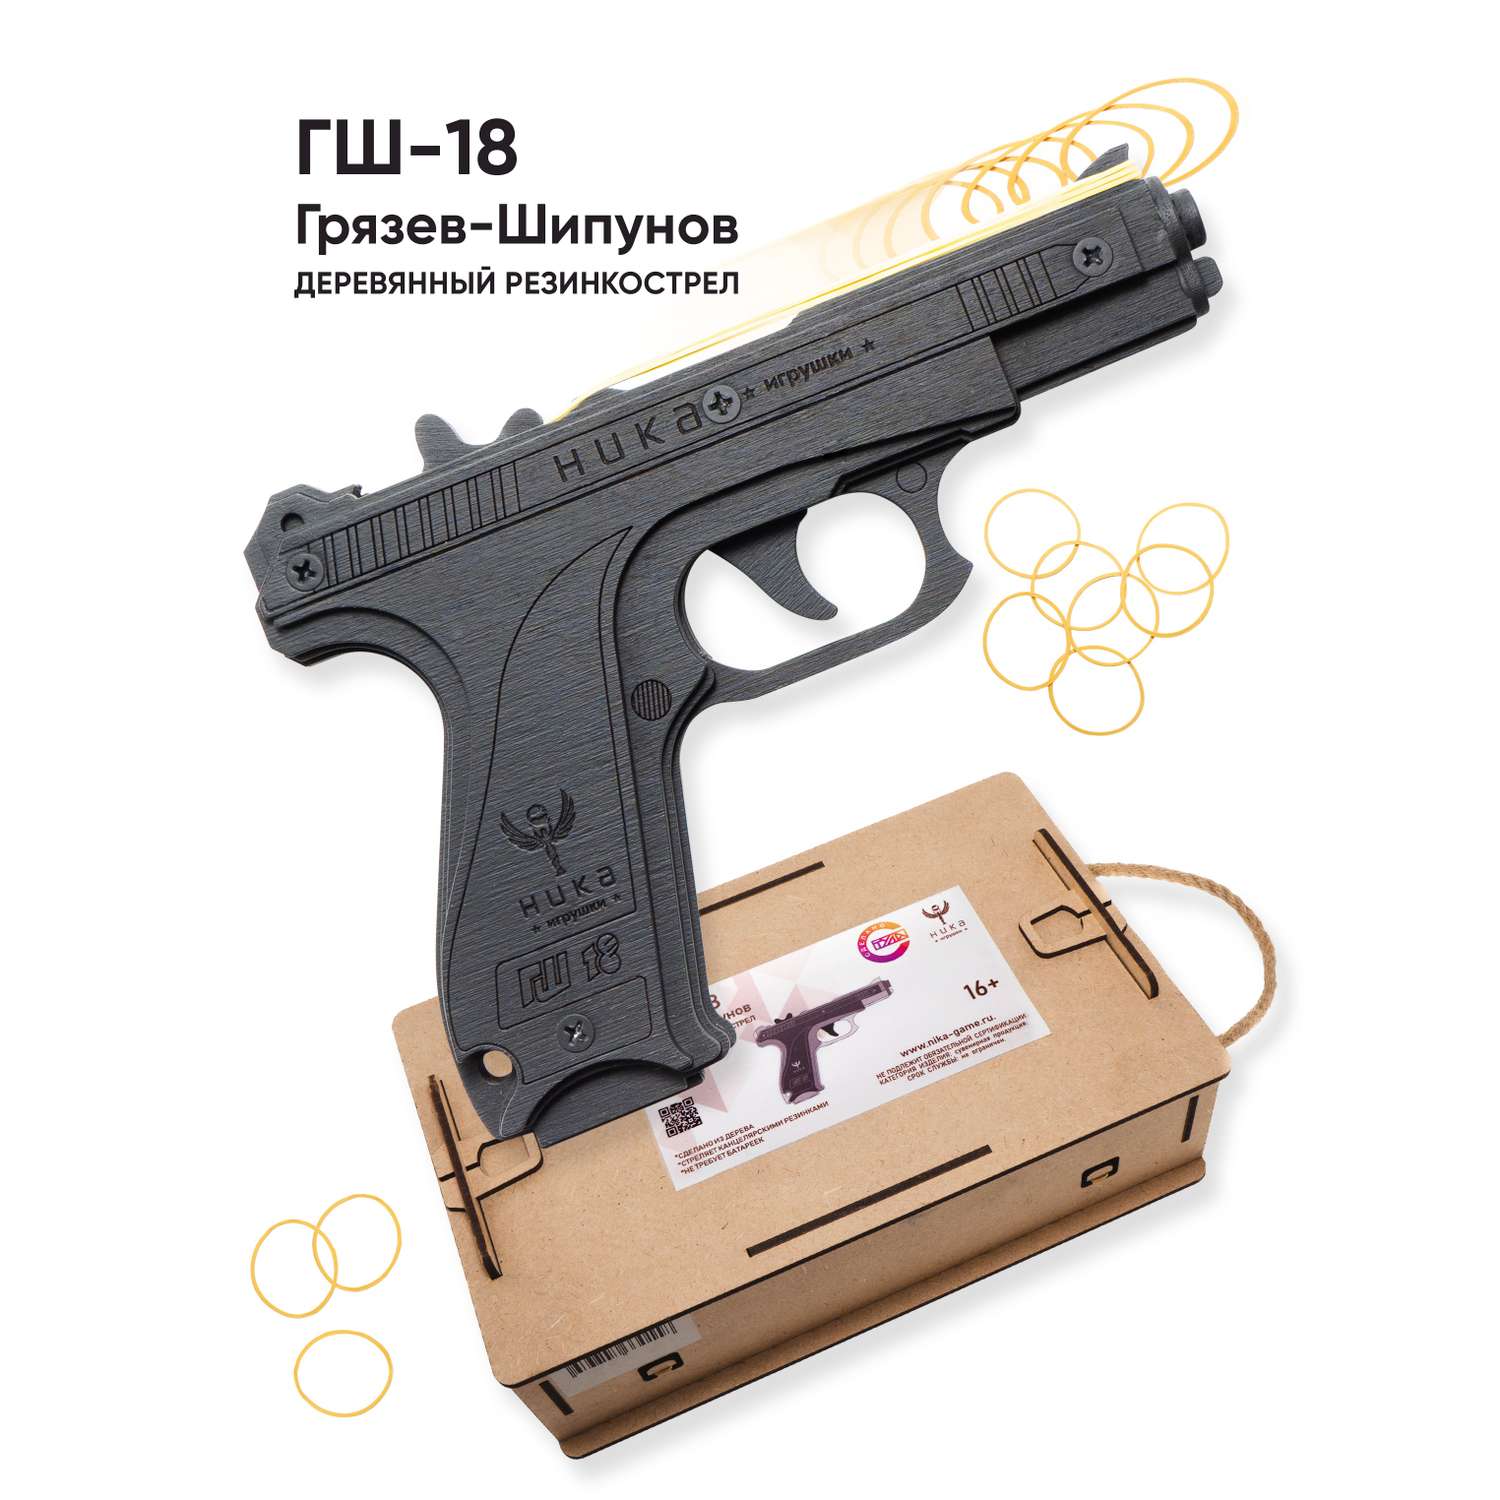 Резинкострел НИКА игрушки Пистолет ГШ-18 в подарочной упаковке - фото 1